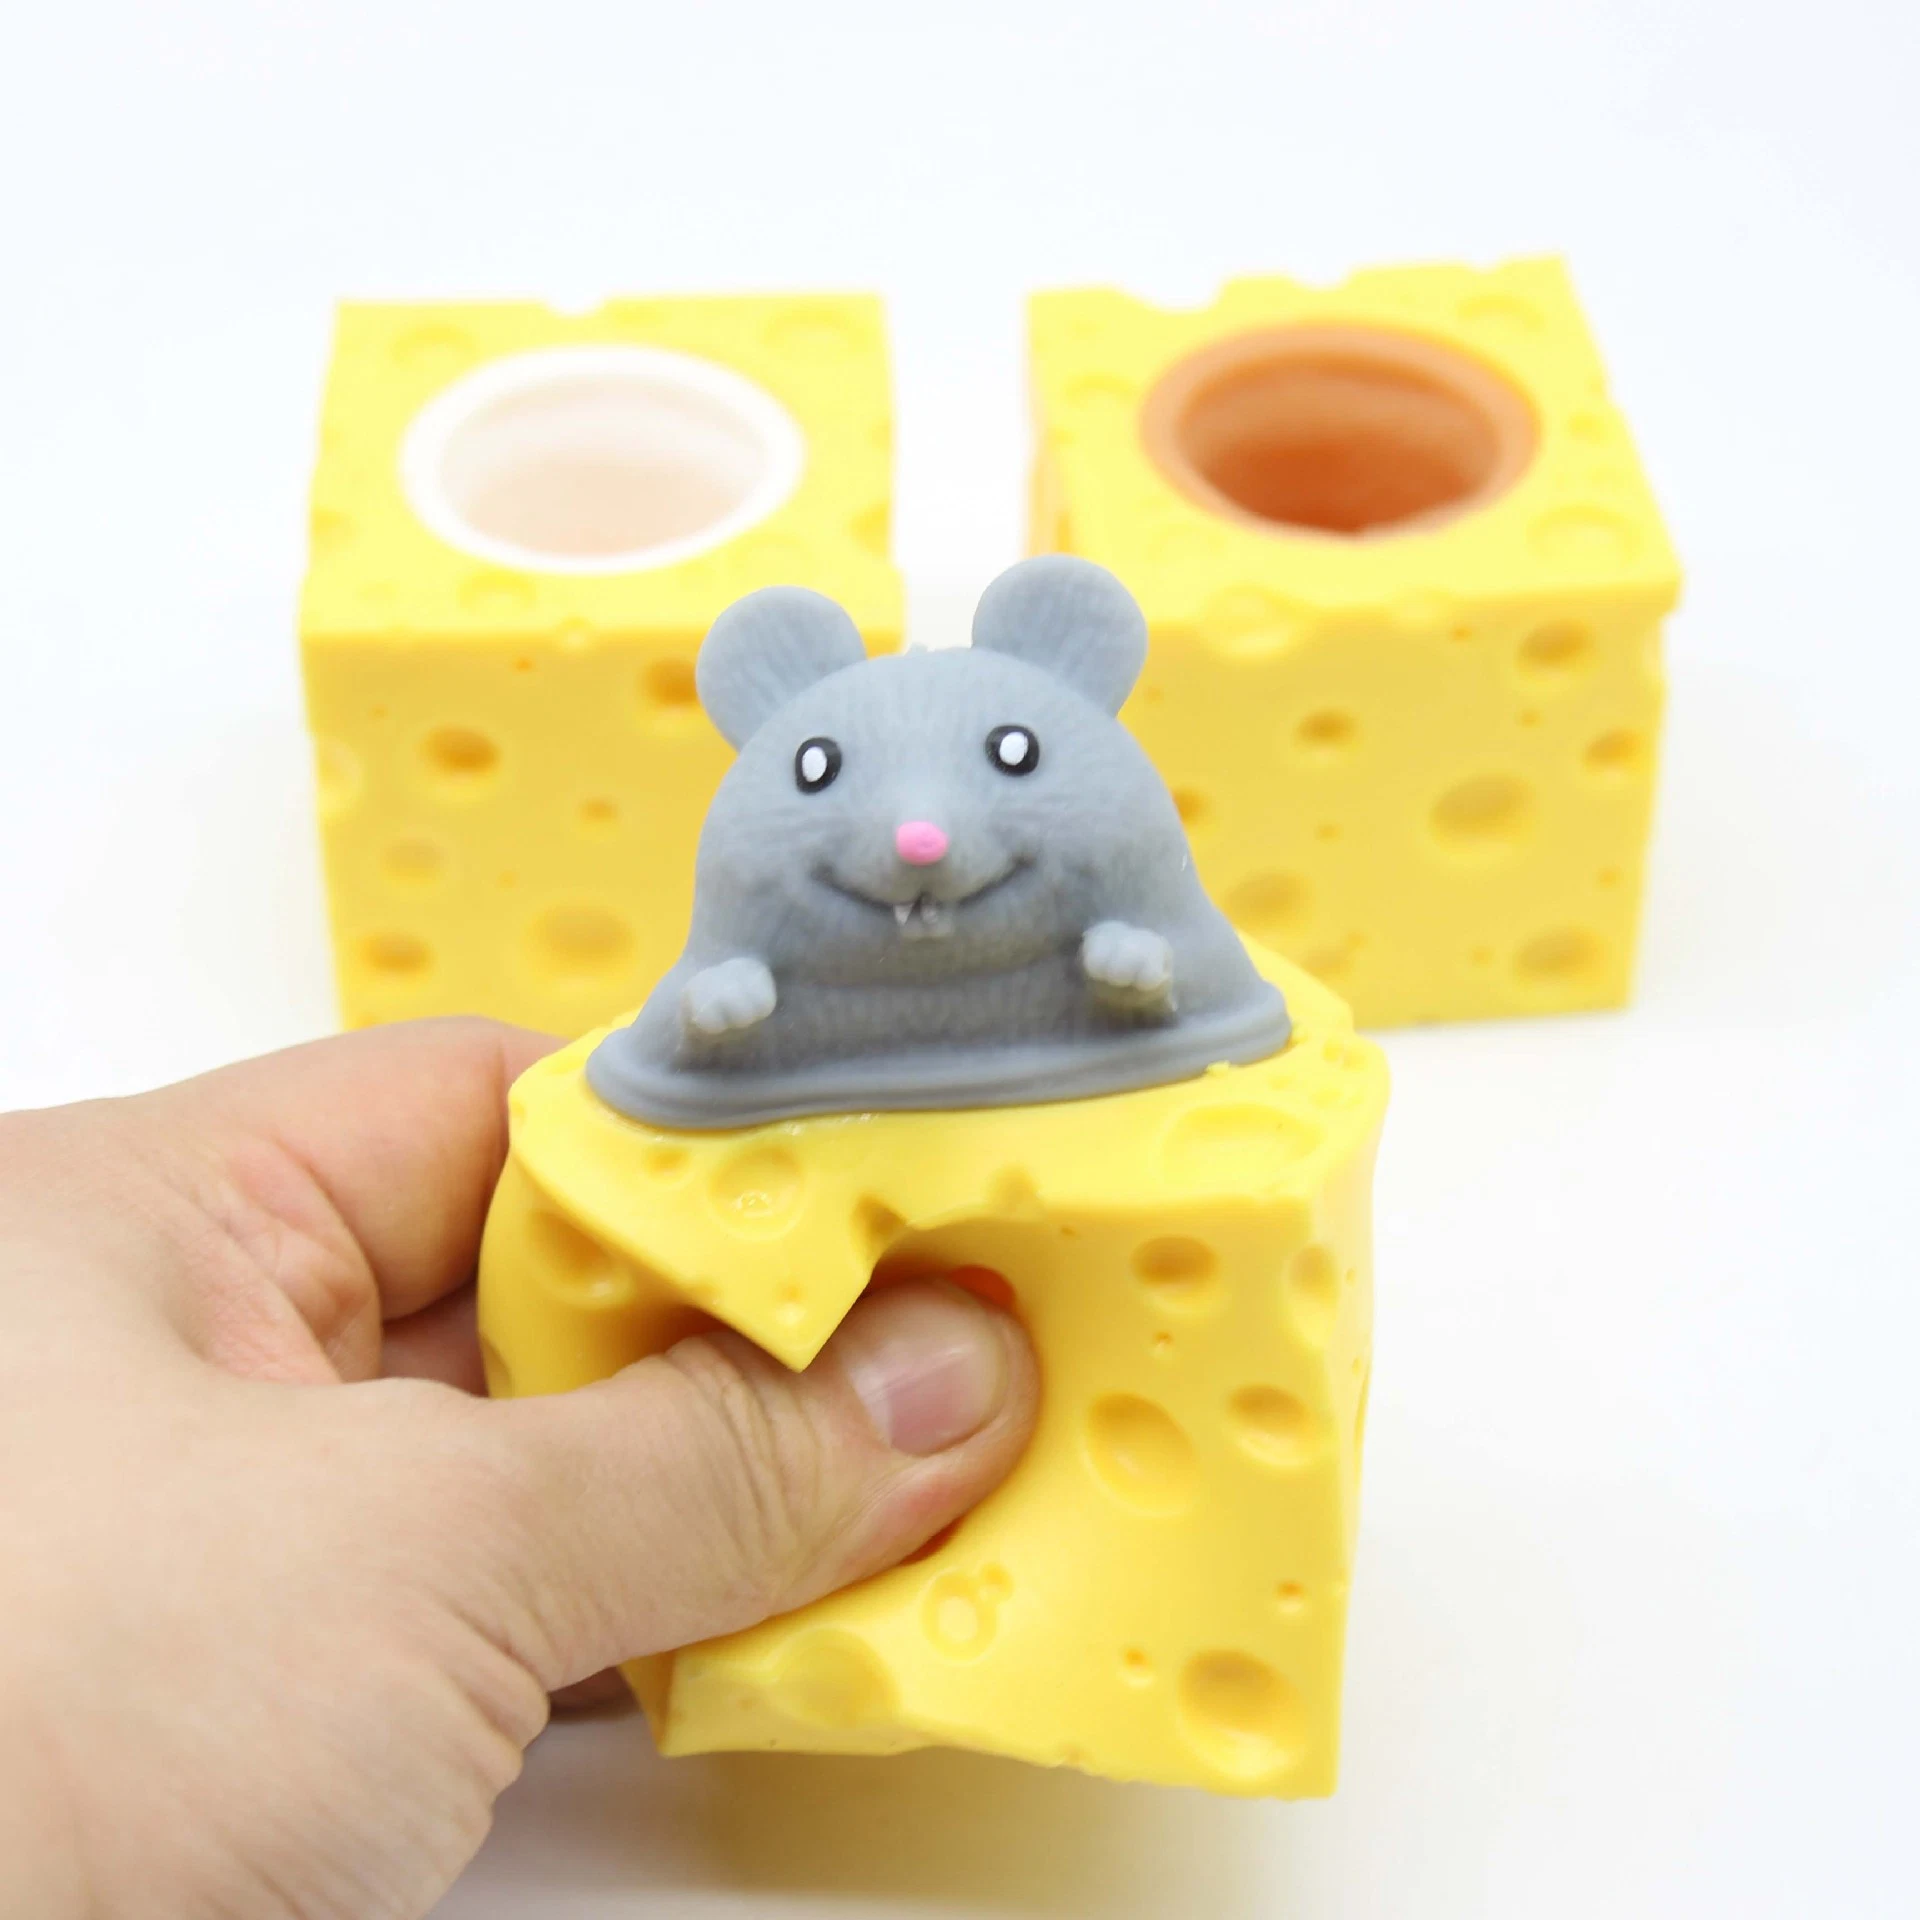 Billig Kind lustig TPR Pop Stress Relief Käse Maus Tasse Lebensmittel Nachahmung Sensory Spielzeug Idee Geschenk Kapsel Maschine Spielzeug